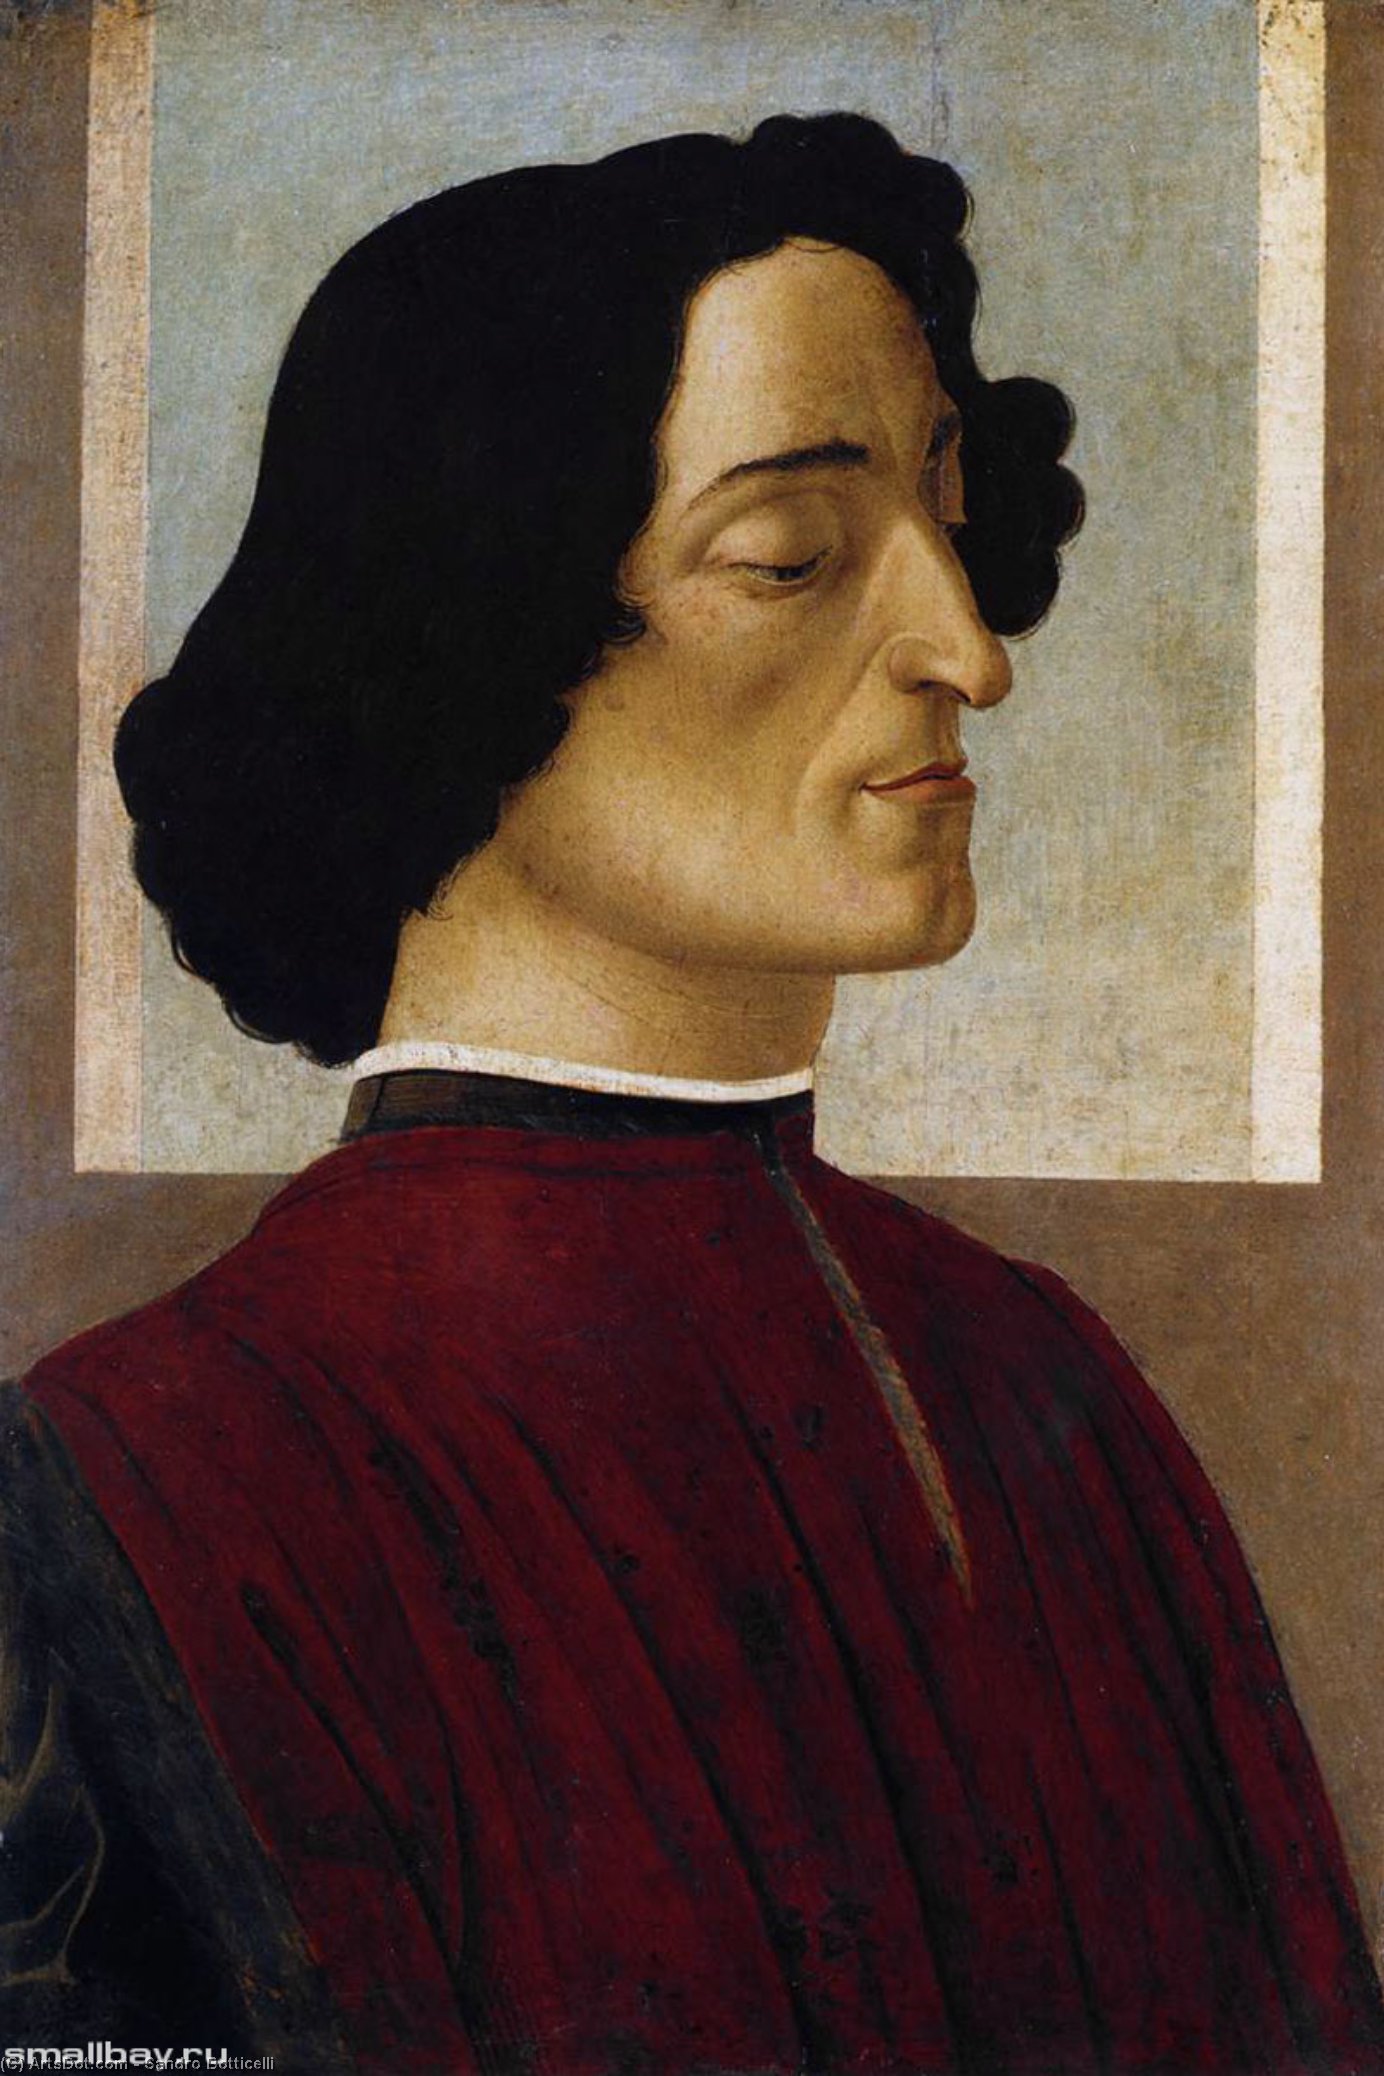 Wikoo.org - موسوعة الفنون الجميلة - اللوحة، العمل الفني Sandro Botticelli - portrait - Portrait of Giuliano de' Medici